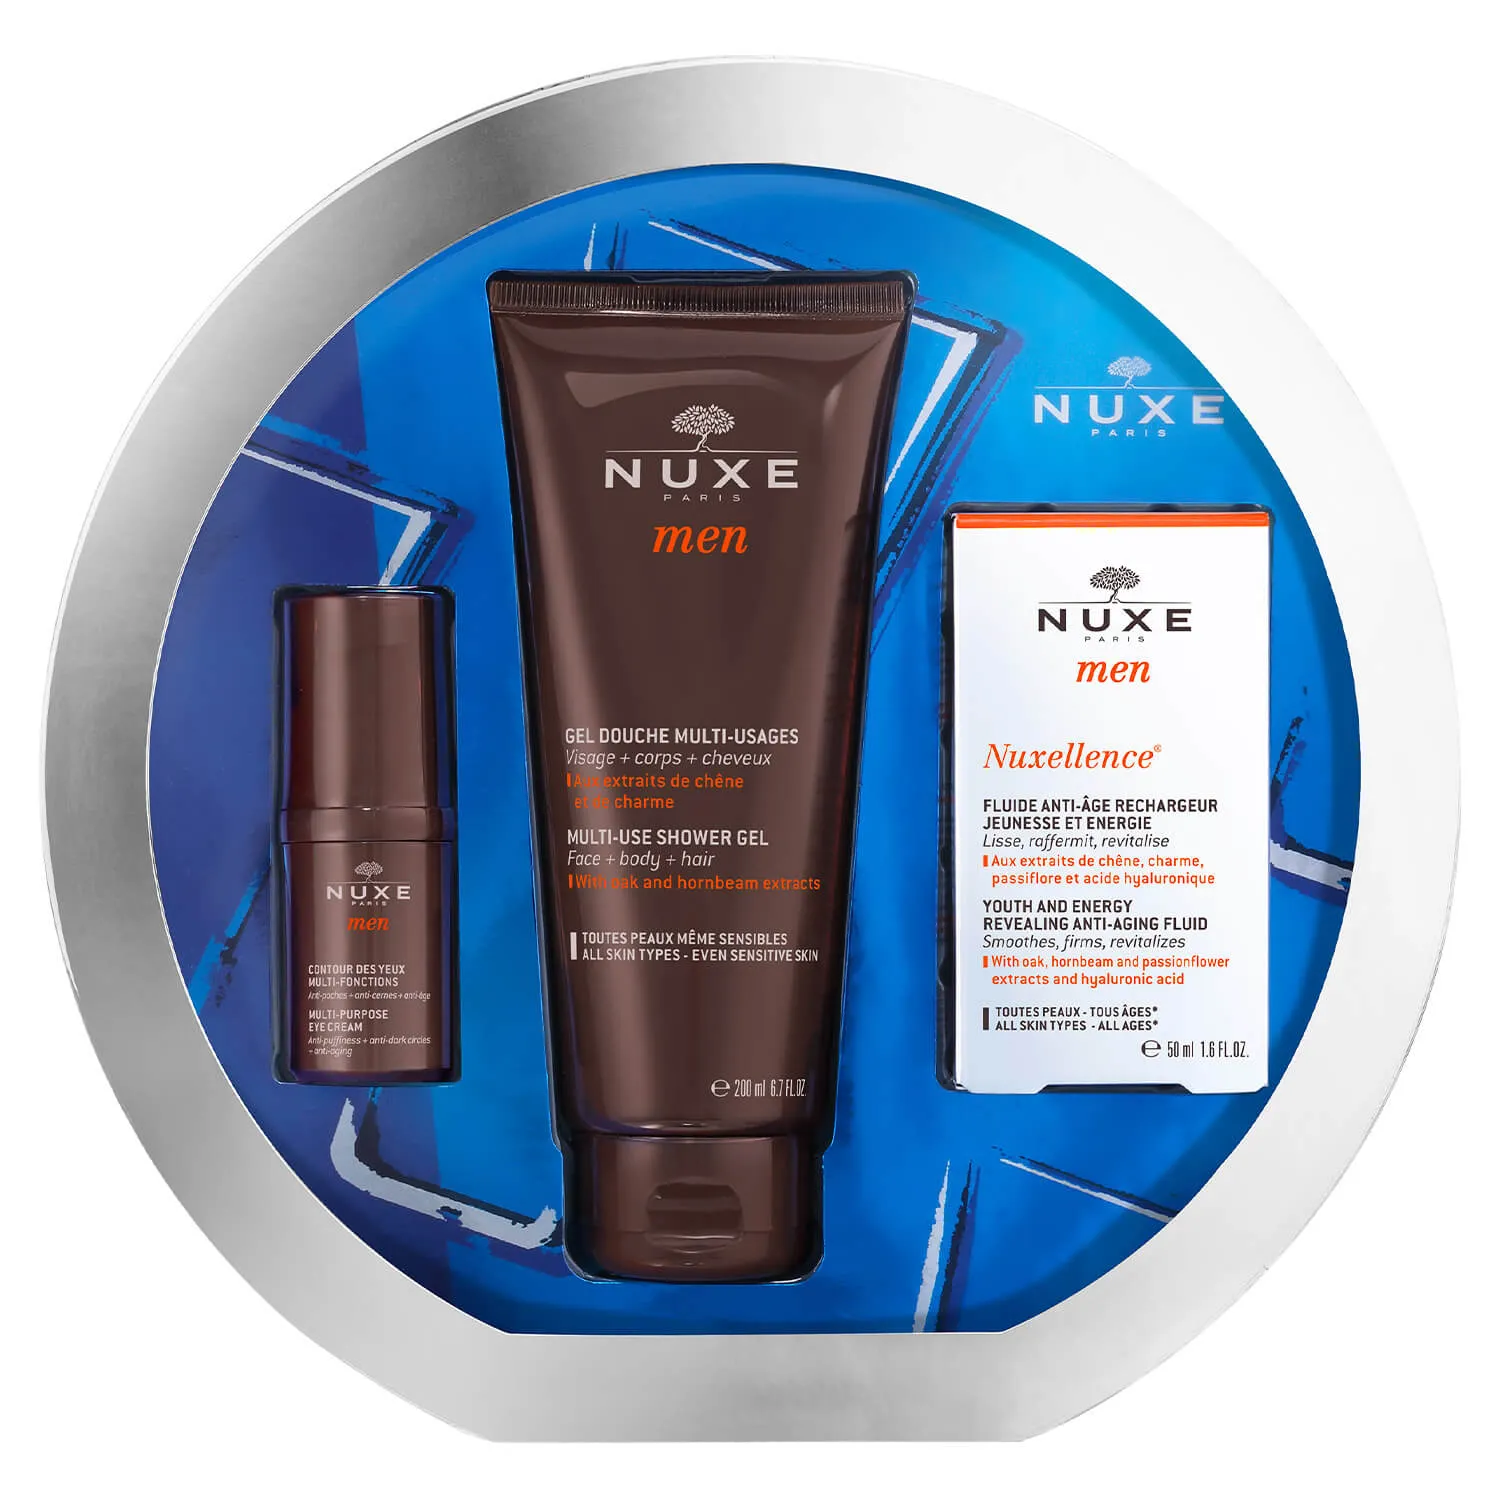 Nuxe zestaw Men Anti-Aging, preparat przeciwstarzeniowy, 50 ml + krem pod oczy, 15 ml + żel pod prysznic, 200 ml